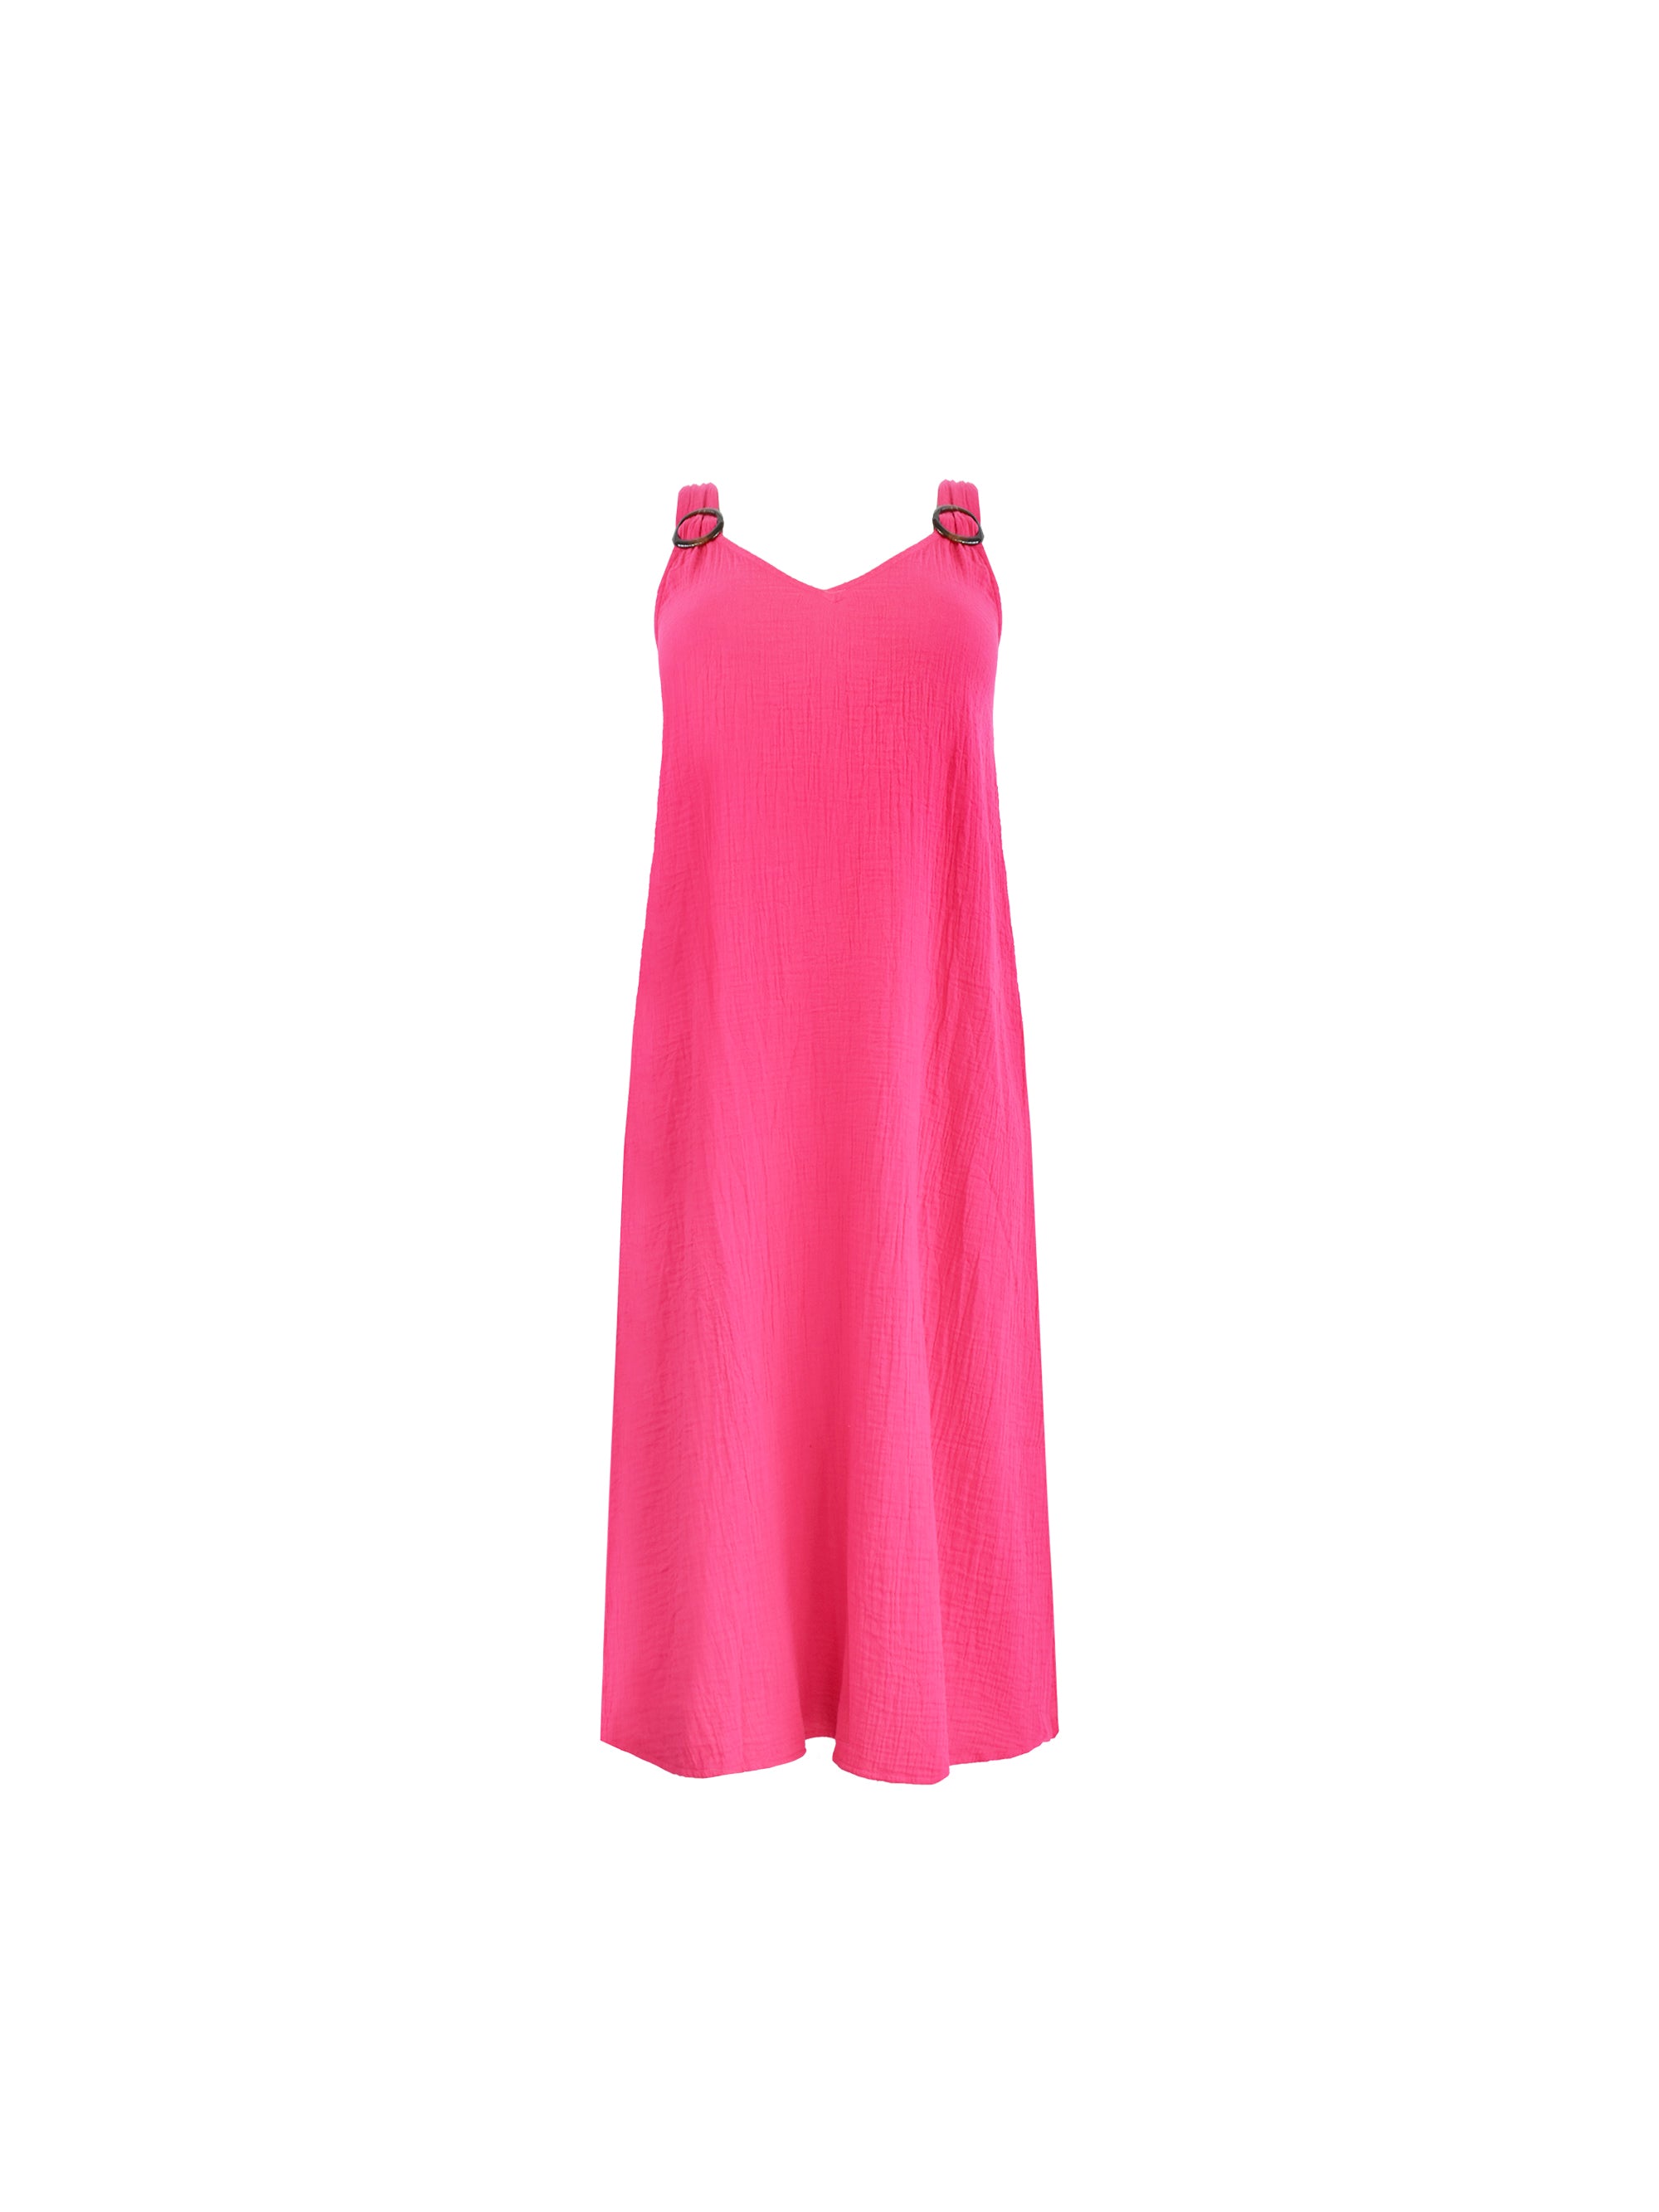 Pink Cotton Crinkle Ring Detail Dress